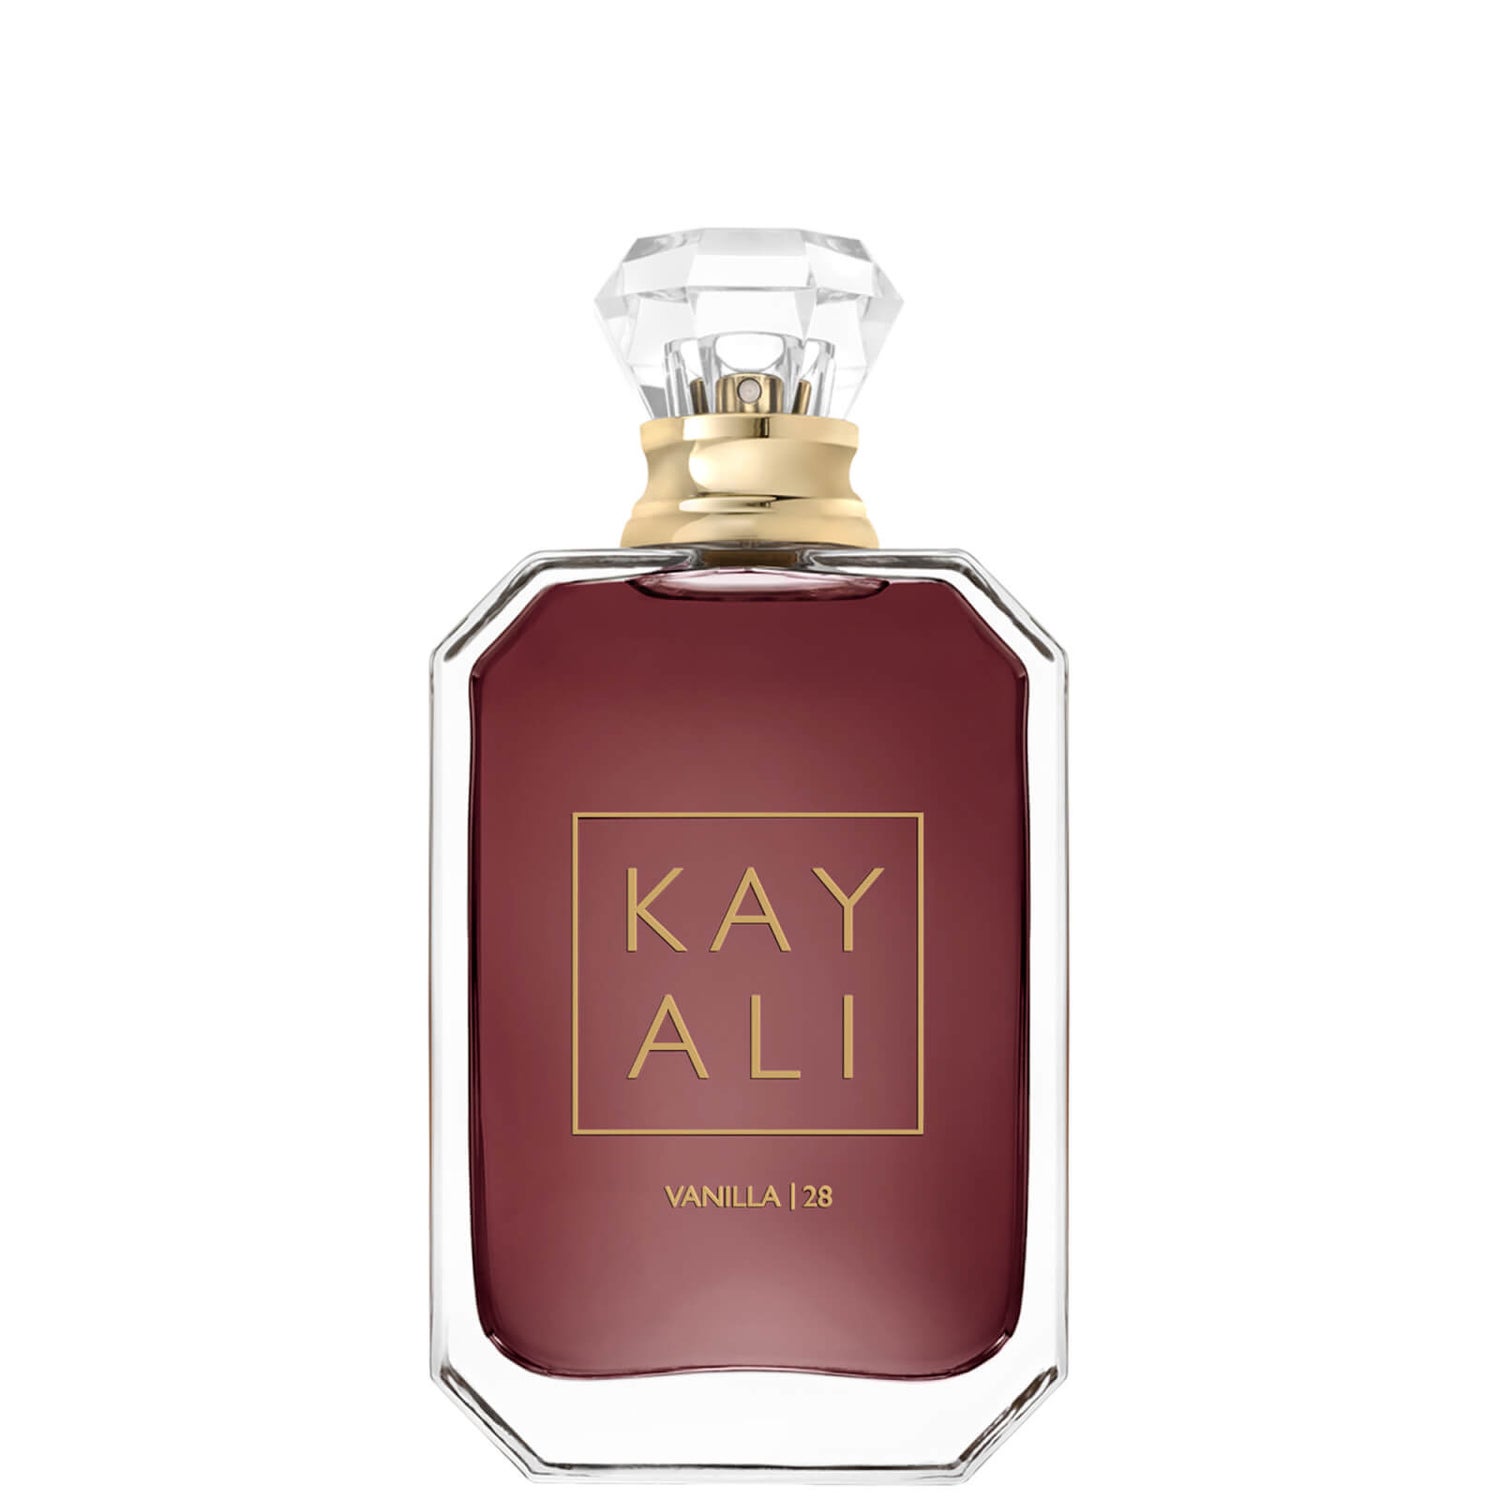 KAYALI Vanilla 28 Eau de Parfum (Various Sizes) | Cult Beauty